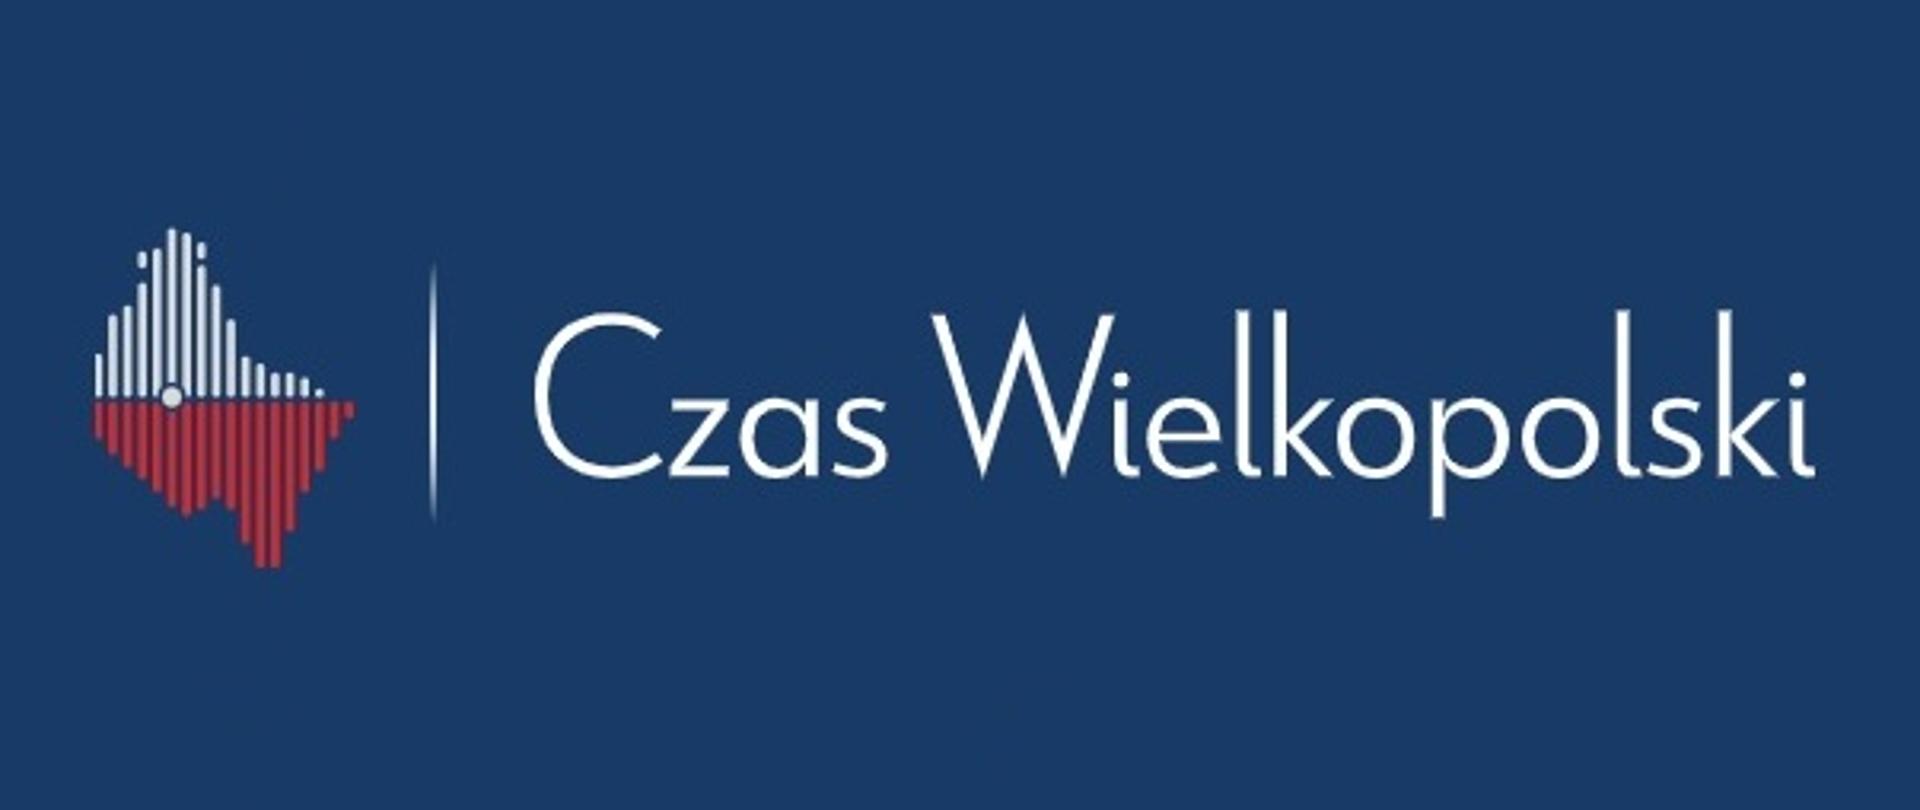 czas-wielkopolski-logo